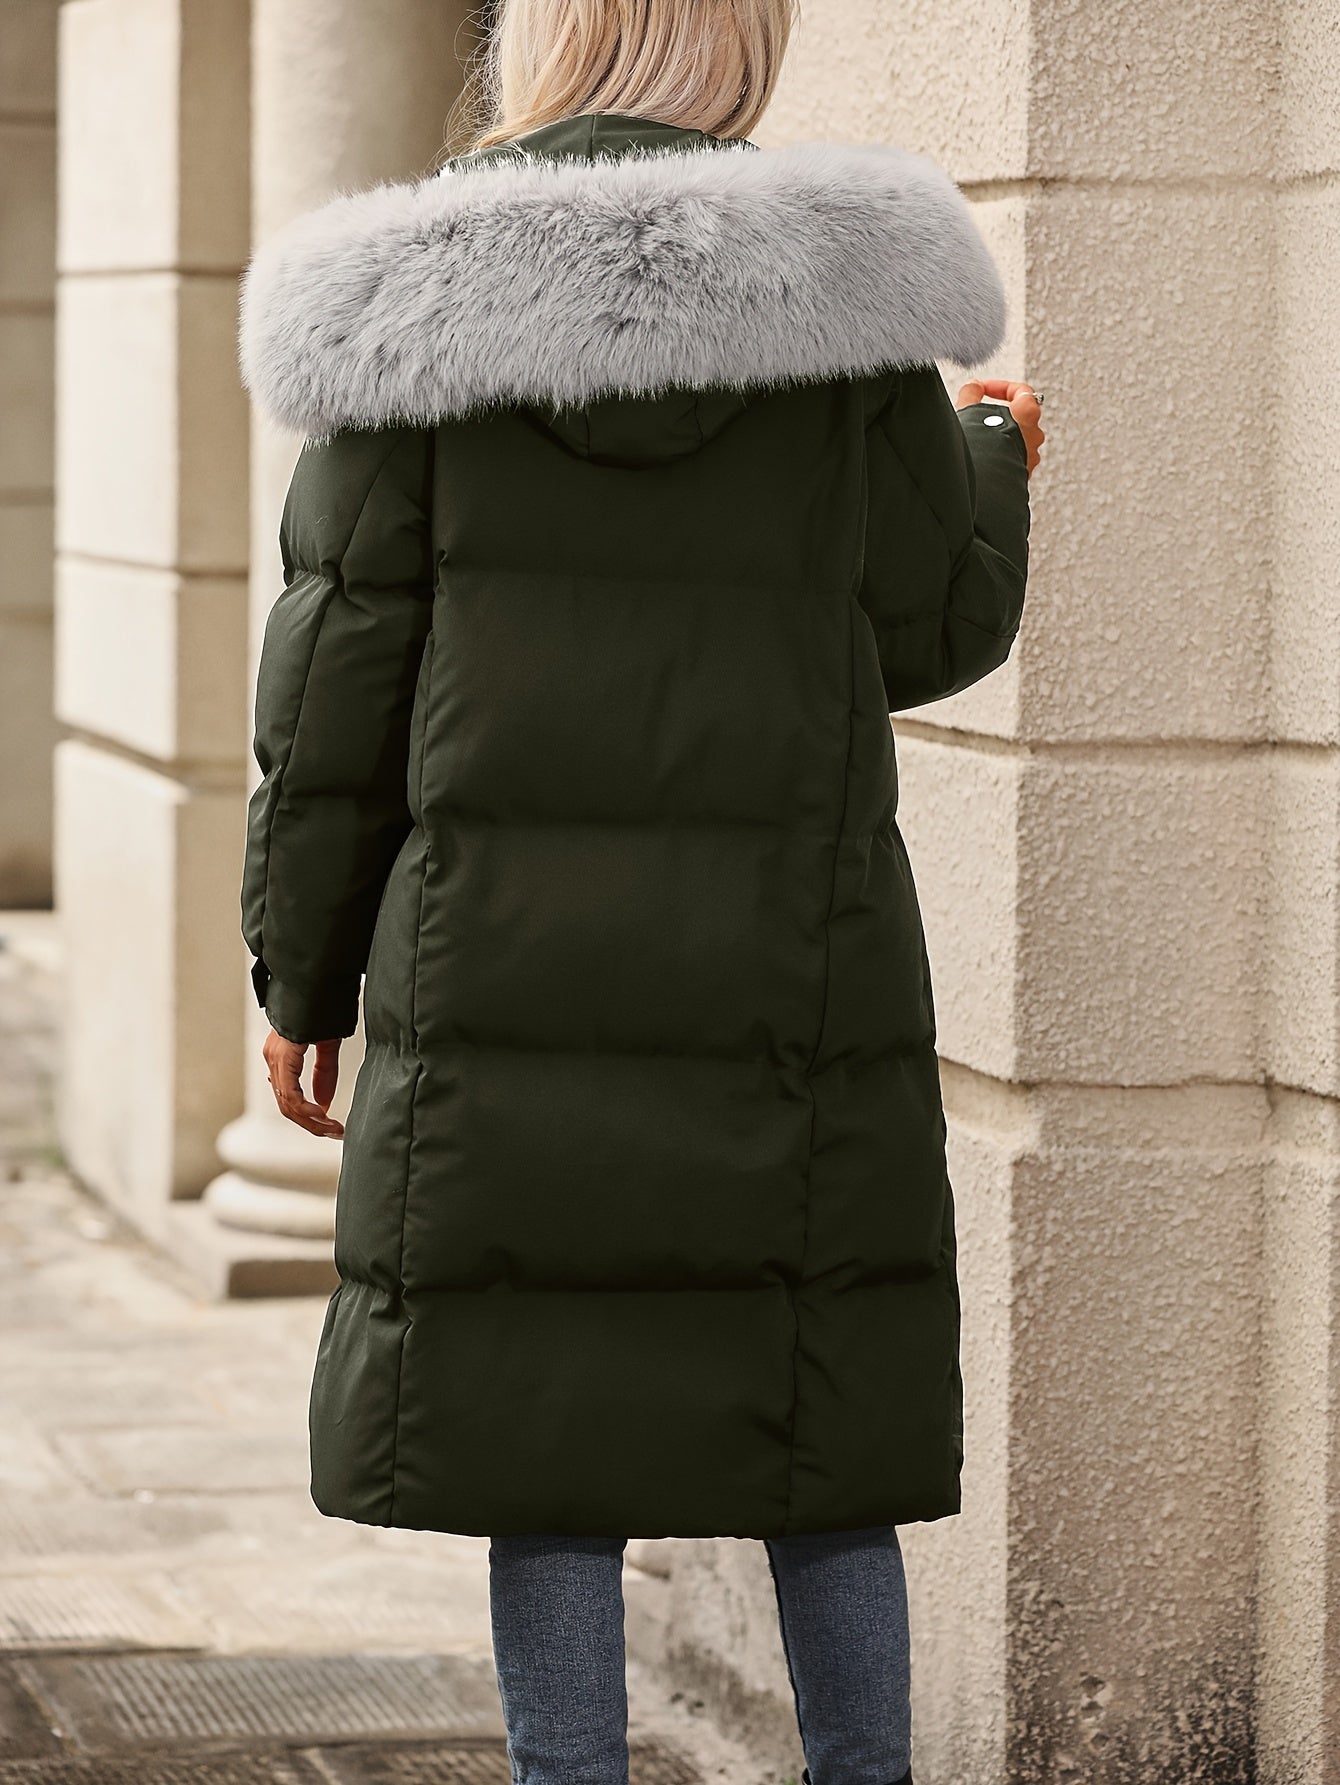 Flauschiger Winterkapuzenmantel - Lässige Damenbekleidung für kalte Tage. - Snatch